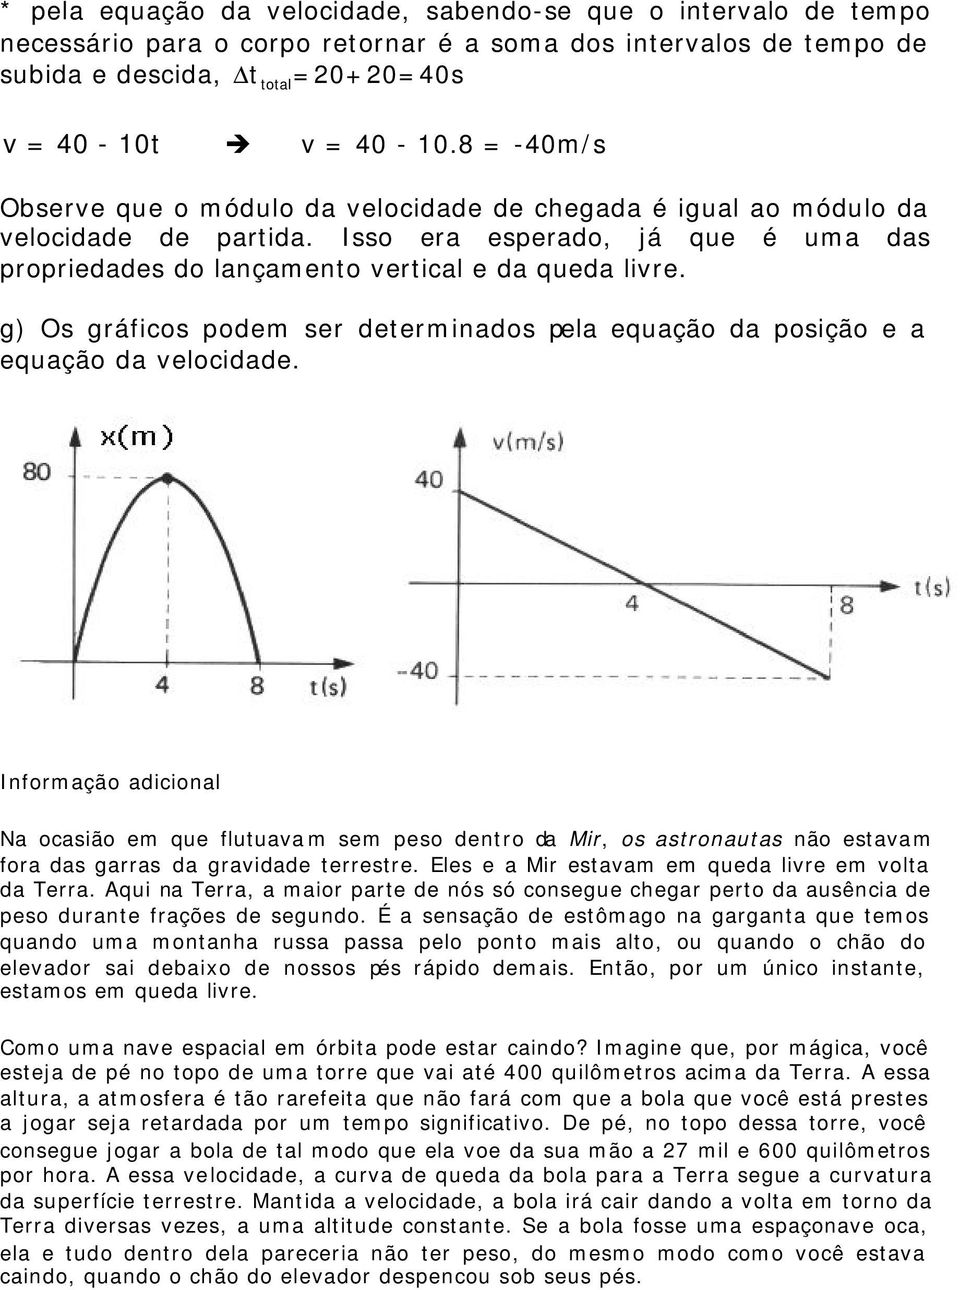 g) Os gráfics pdem ser determinads pela equaçã da psiçã e a equaçã da velcidade.